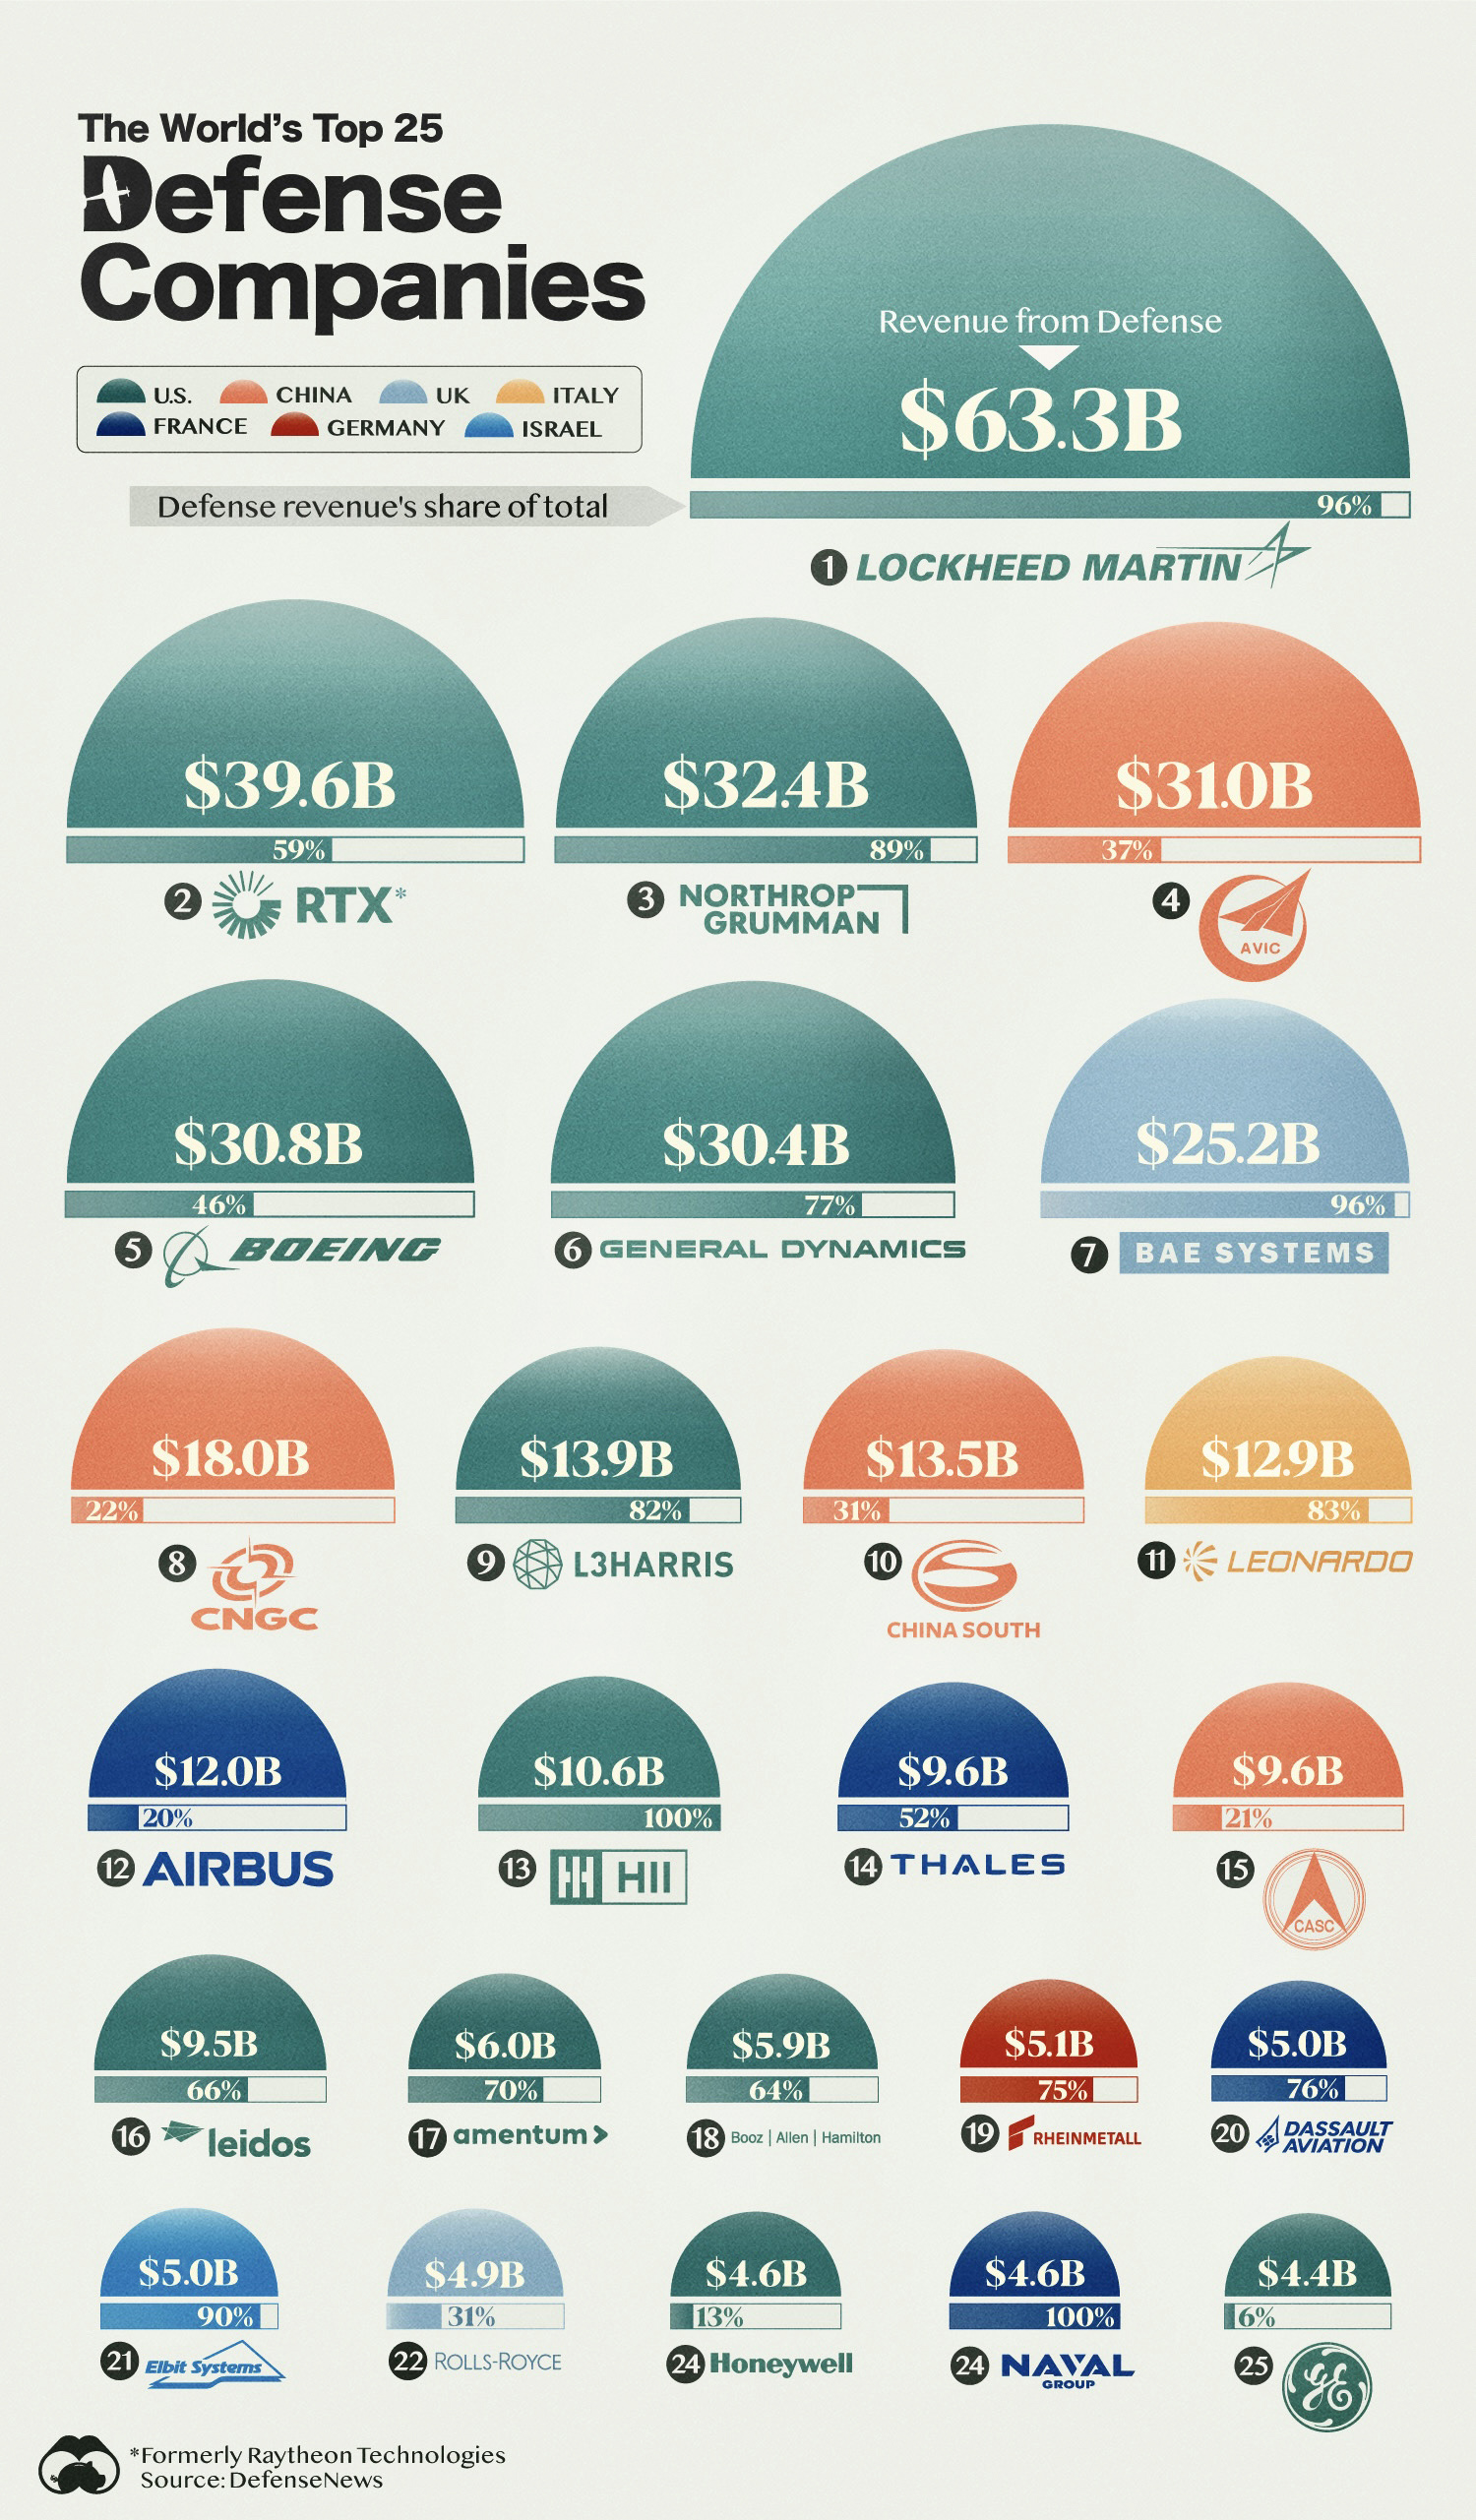 Top 25 defense companies by revenue